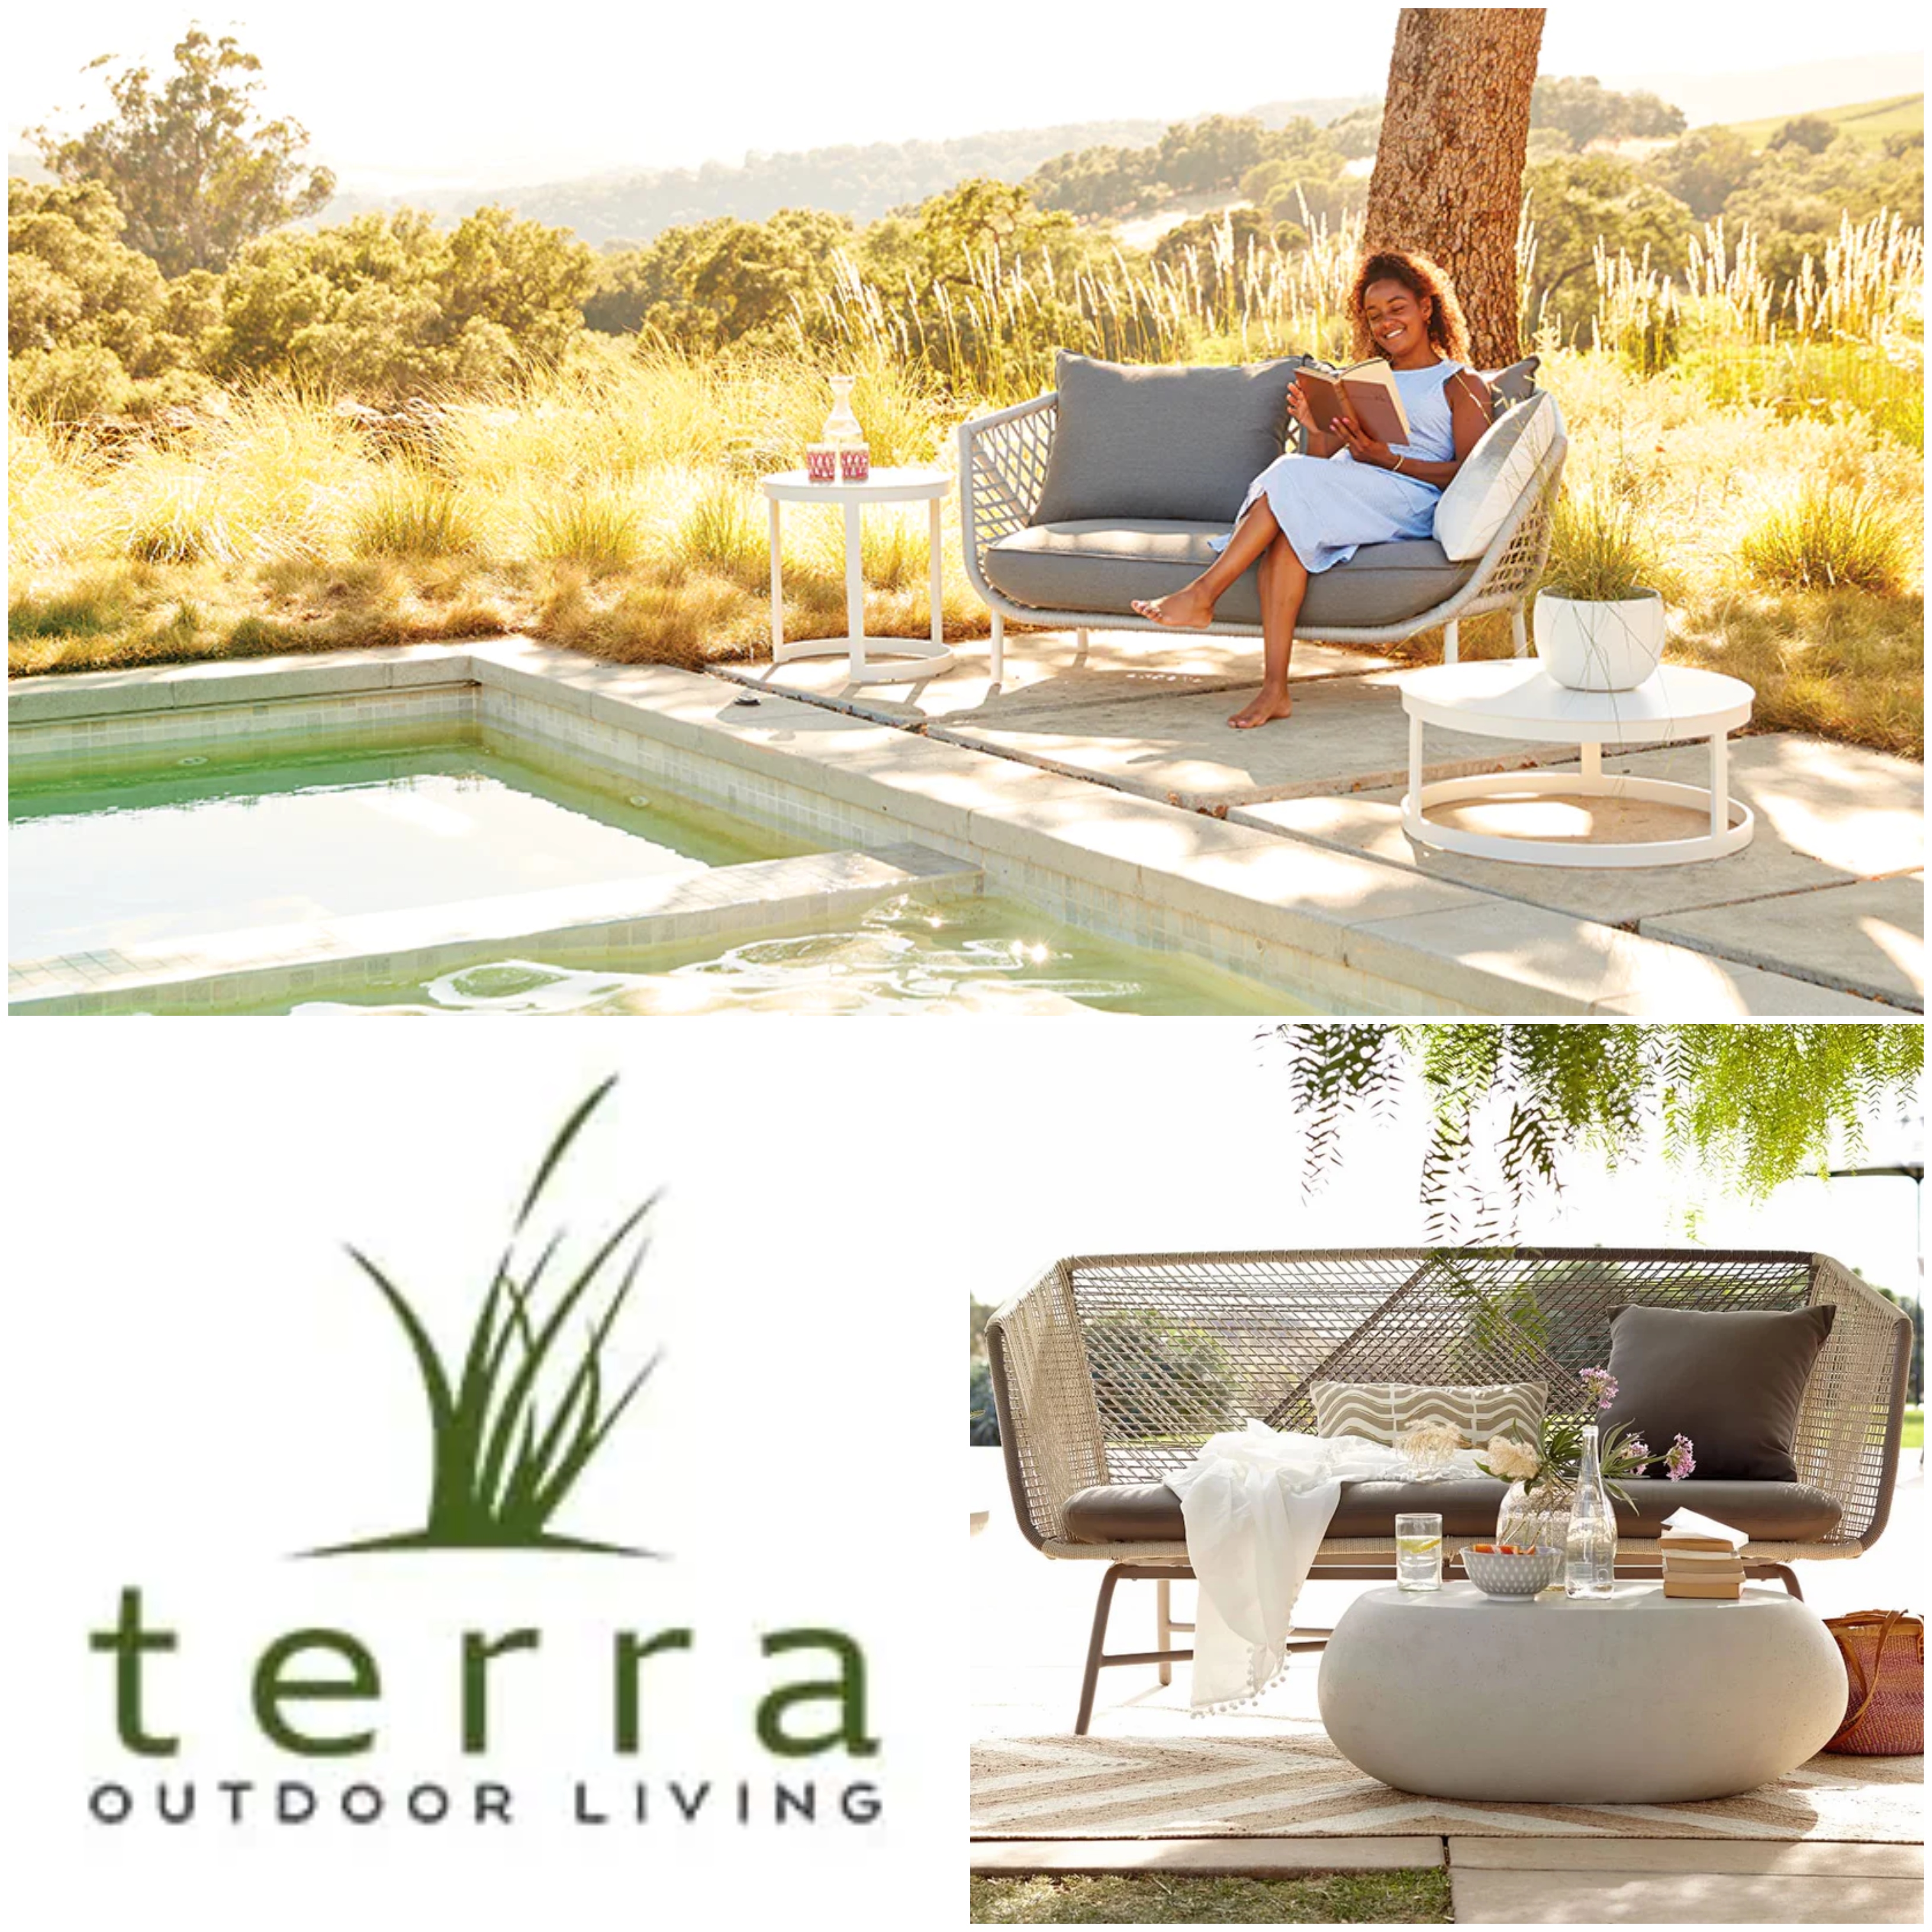 Terra Outdoor Living